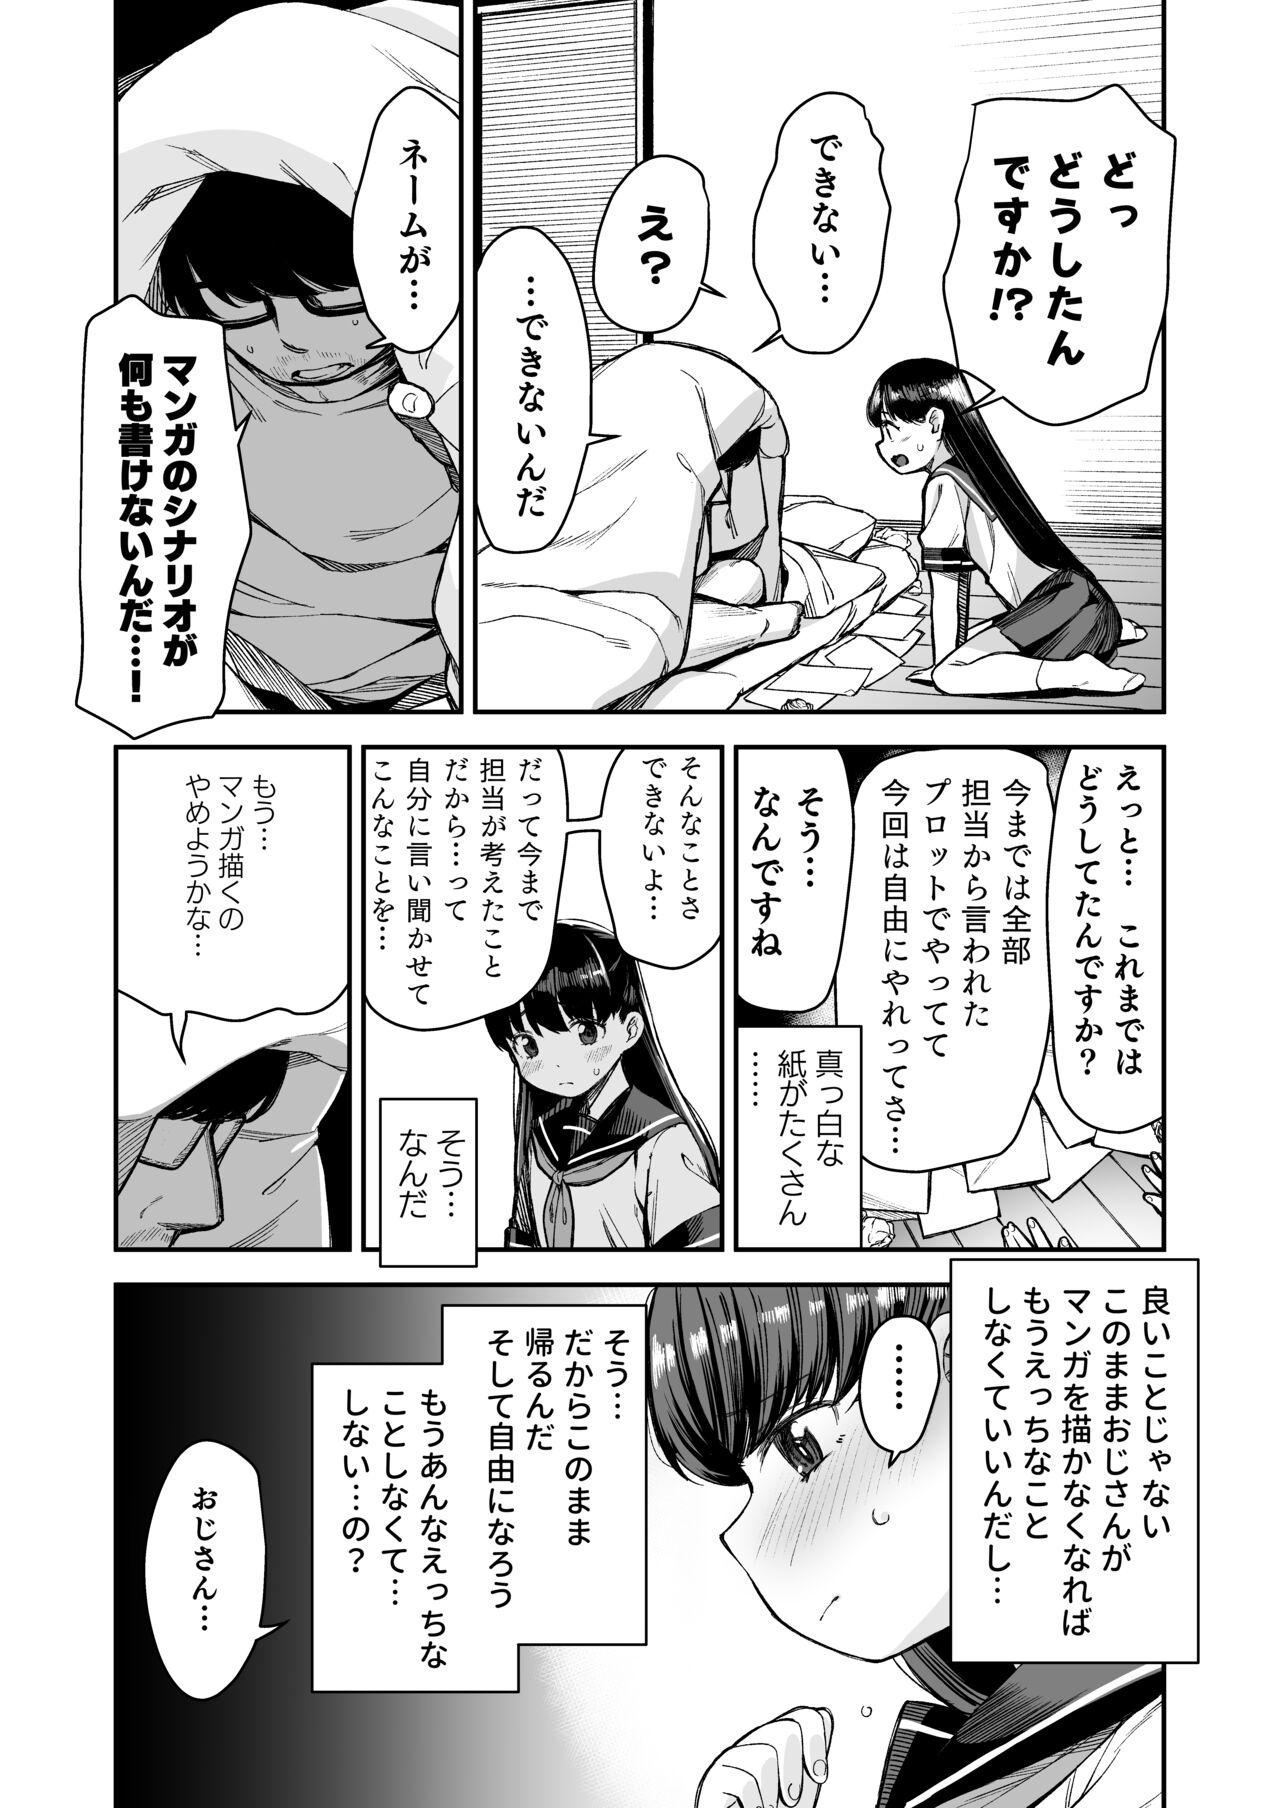 Do-M Shoujo wa, Manga no Naka de. 25